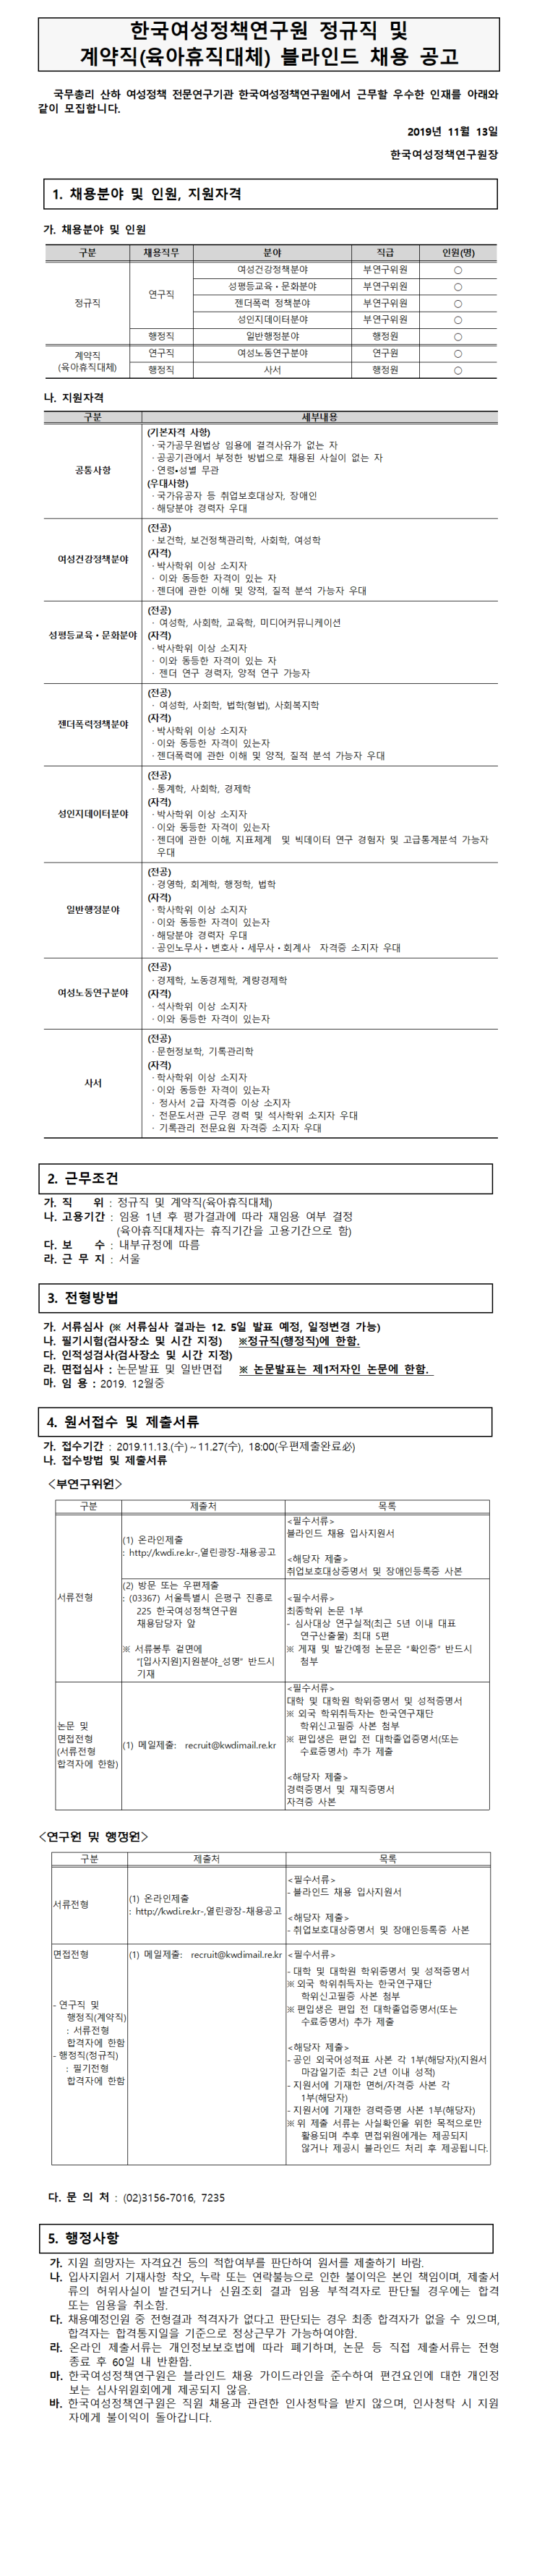 [채용][한국여성정책연구원] 2019년 정규직 및 계약직(육아휴직대체) 채용